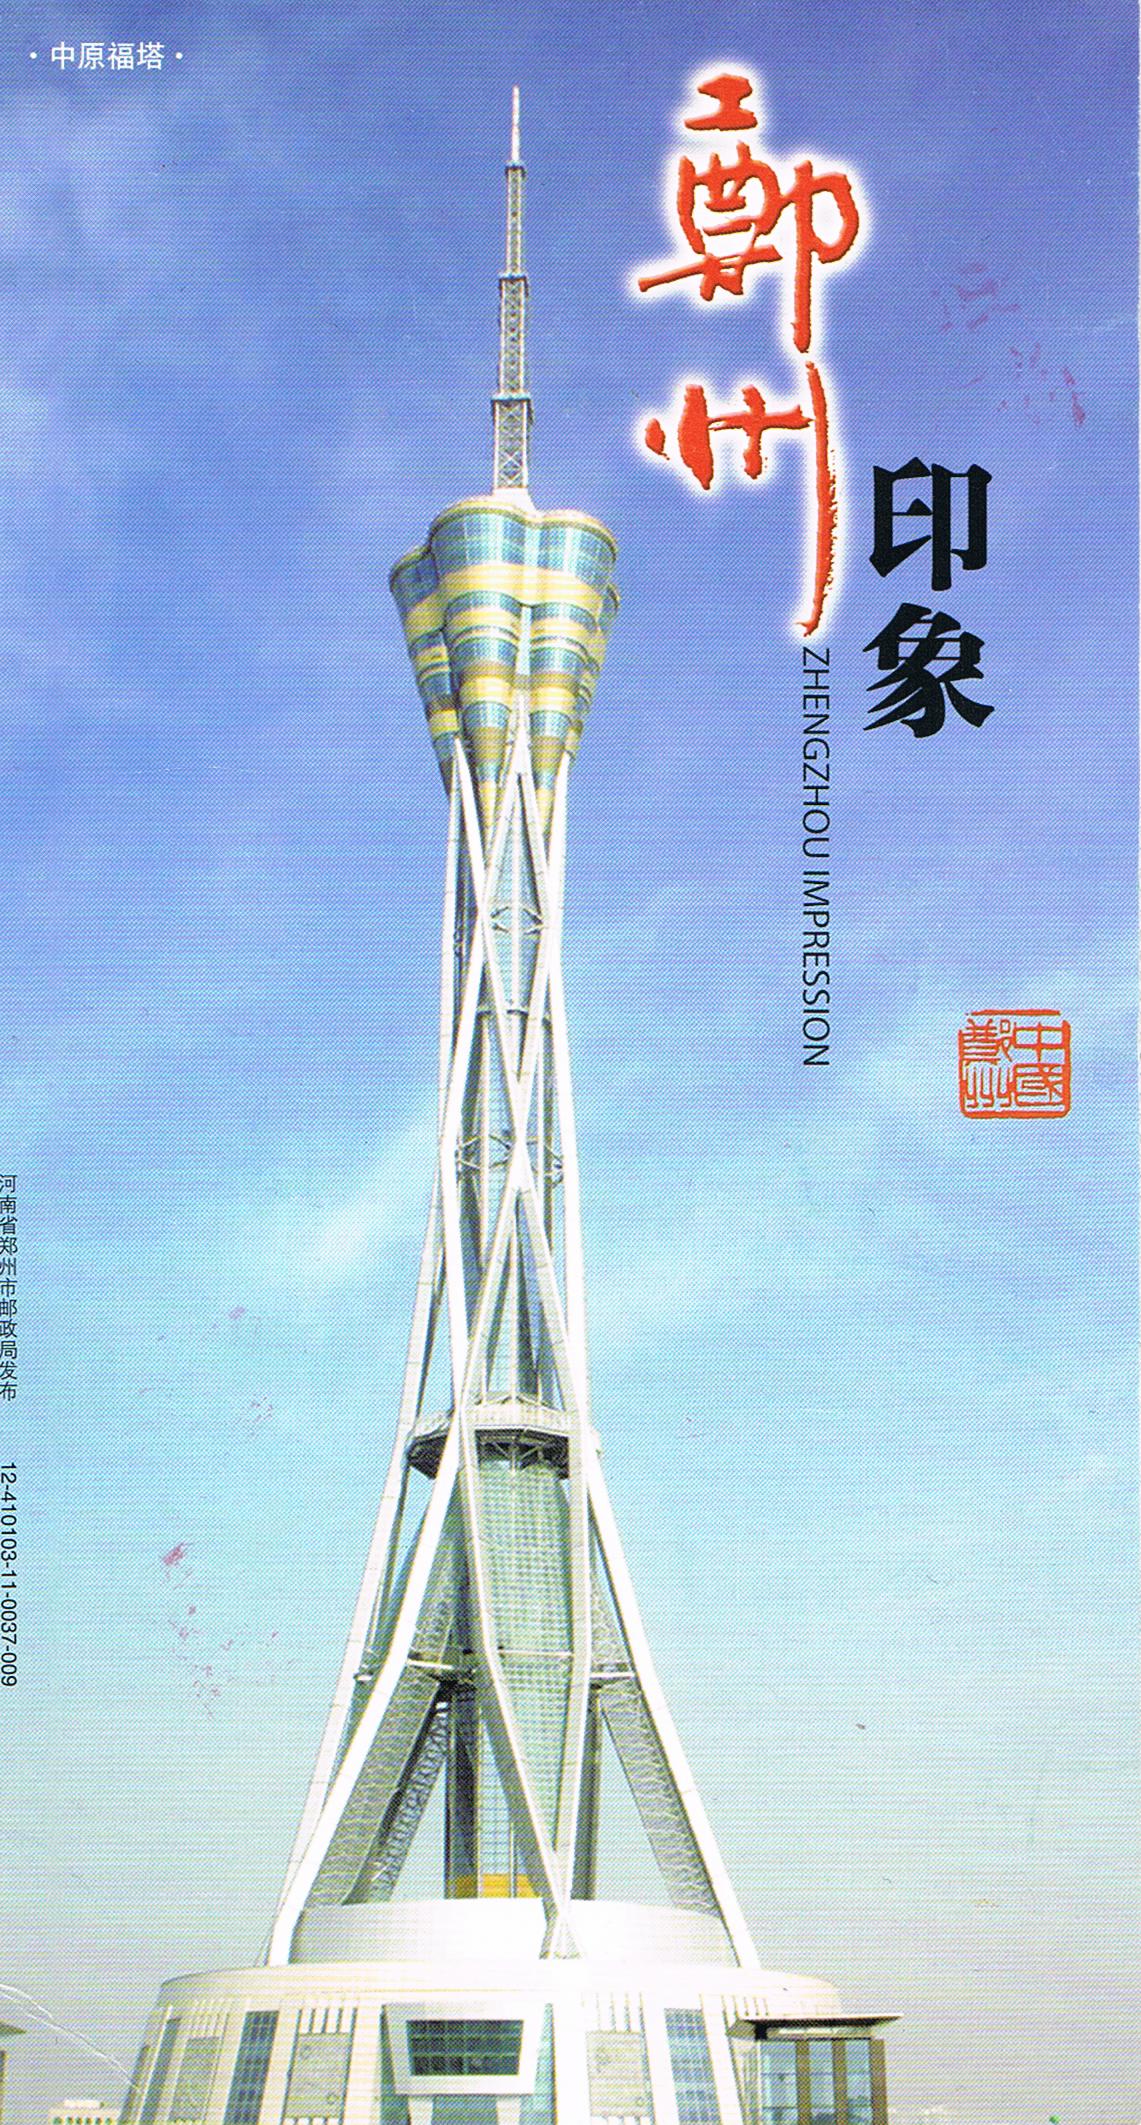 Fernsehturm Zhengzhou in Zhengzhou, Henan, China